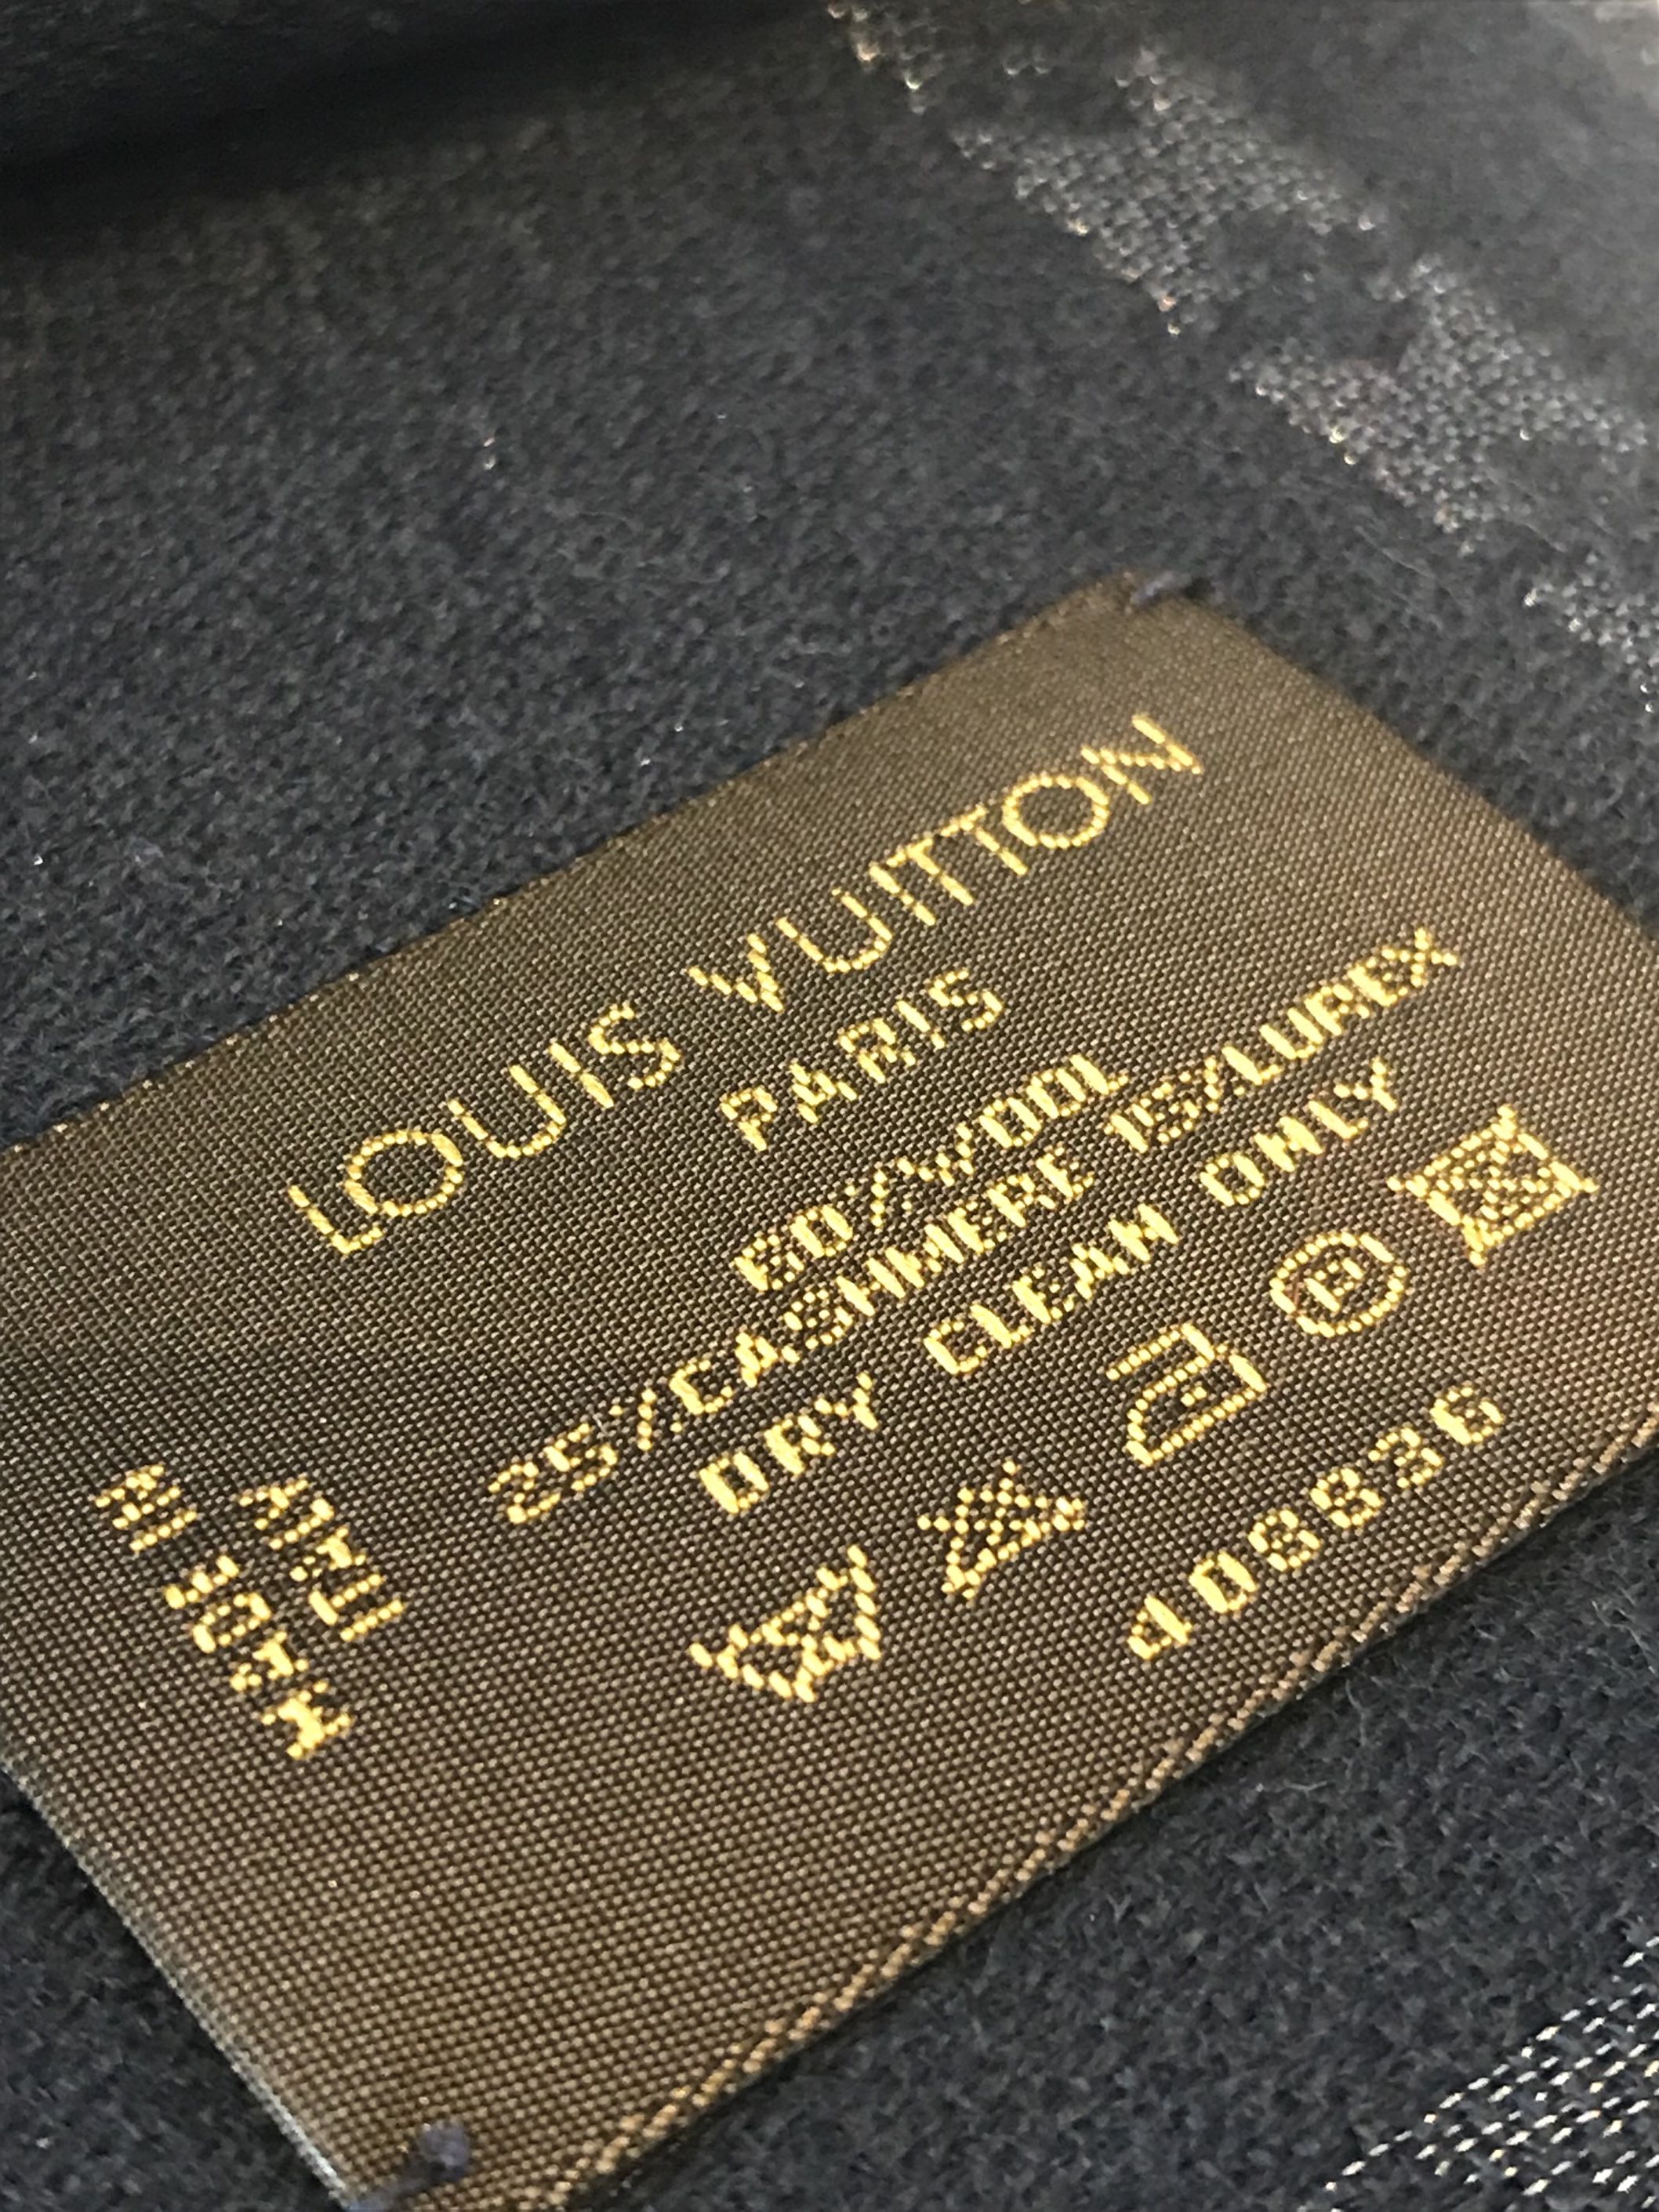 Louis Vuitton ritira la sciarpa ispirata alla kefiah palestinese per le  accuse di appropriazione culturale - Open